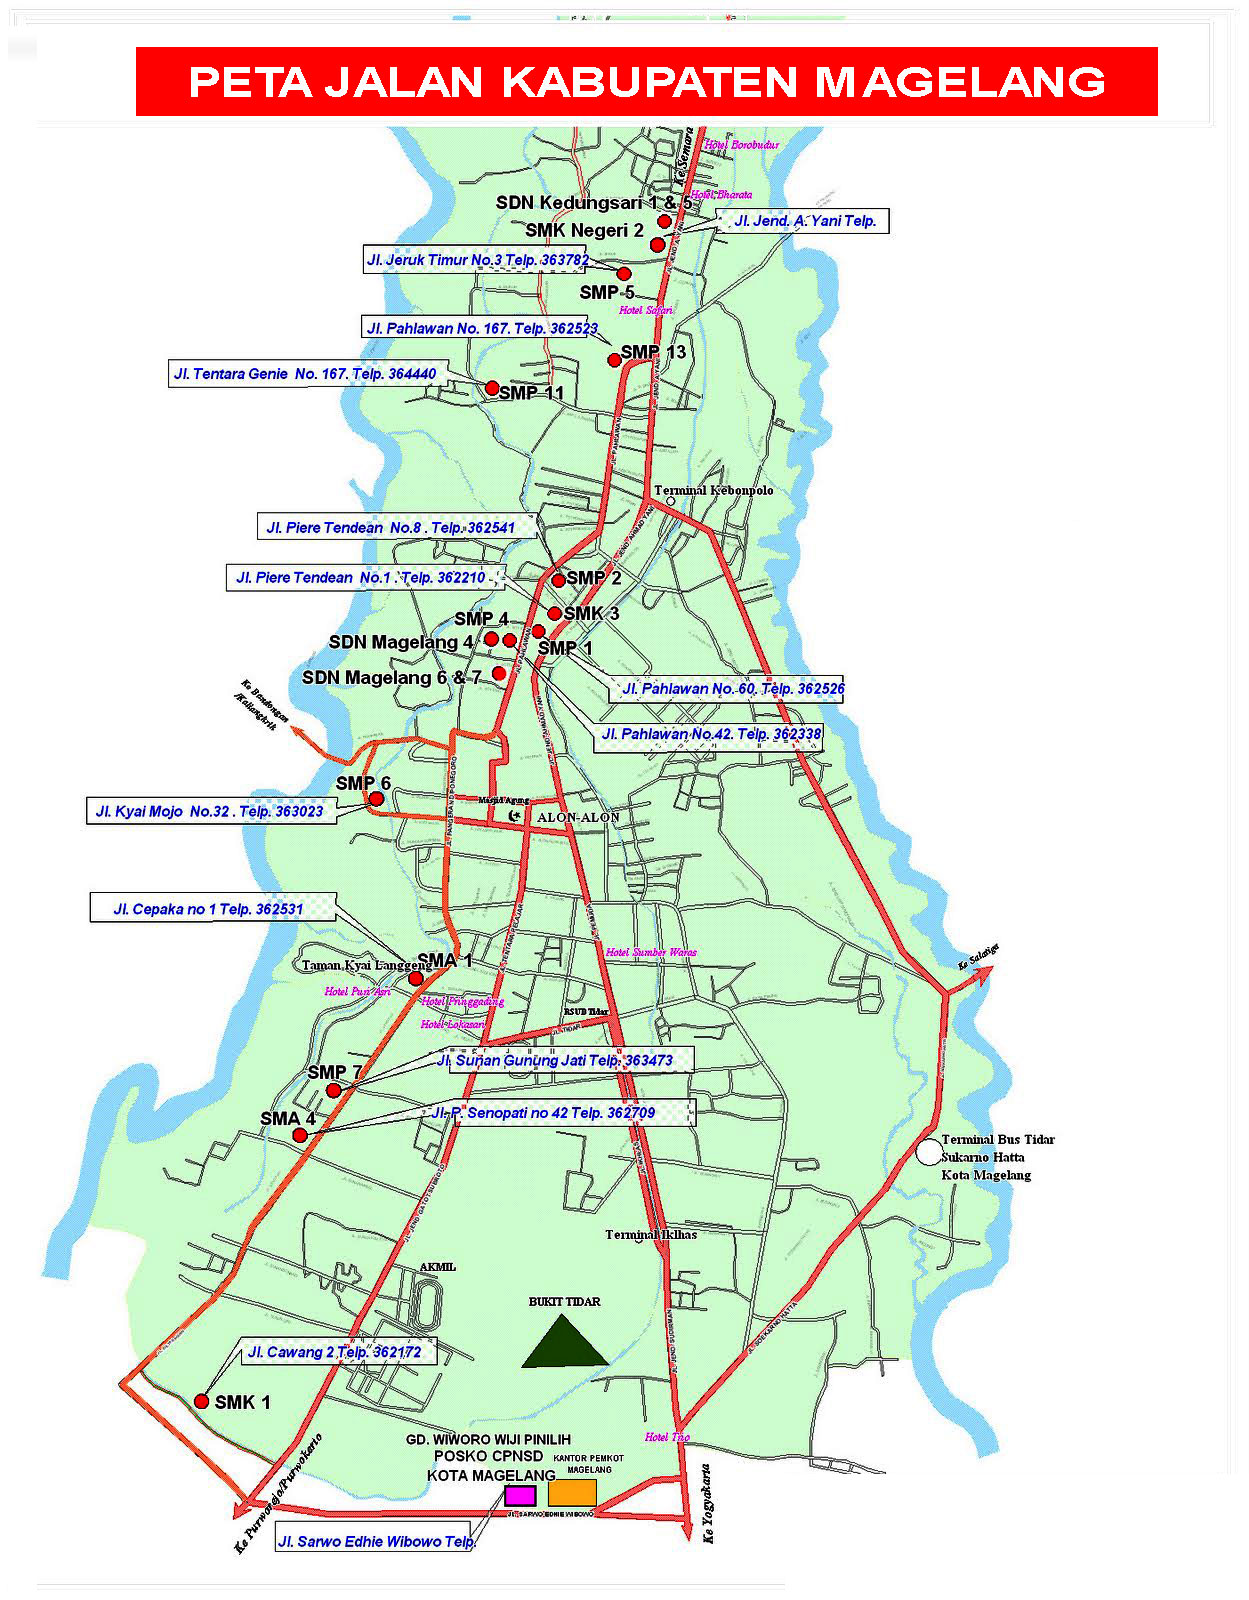 Peta Jalan Kabupaten Magelang